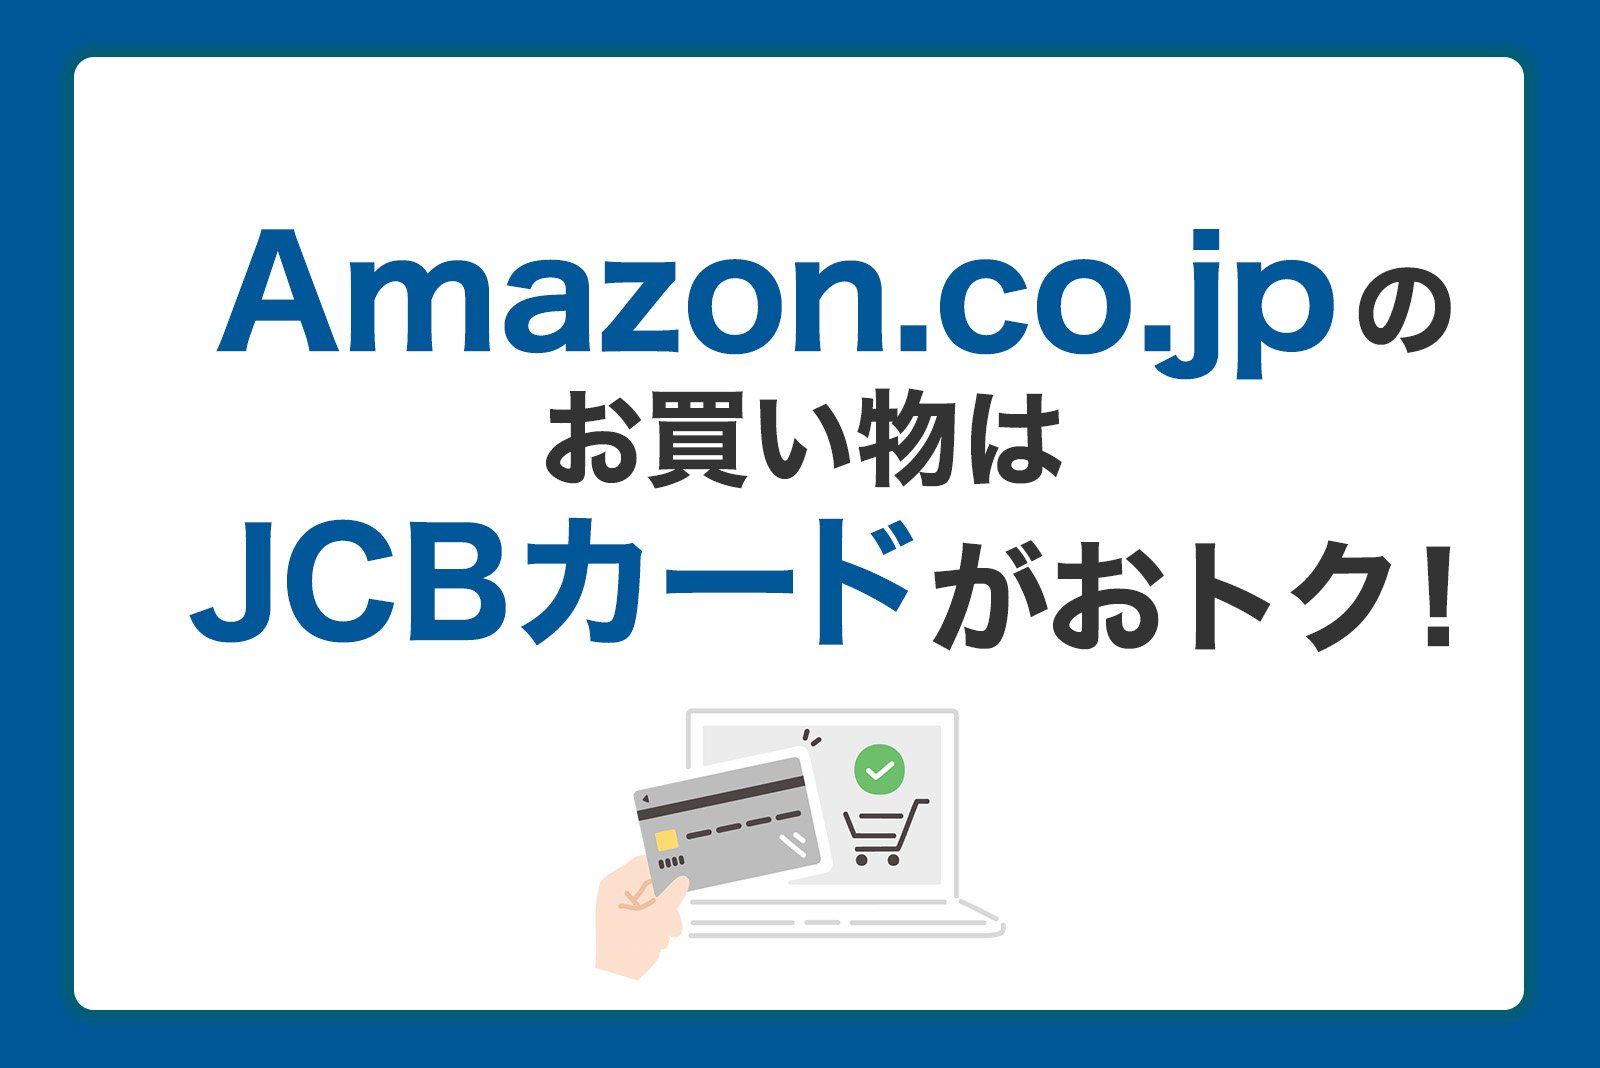 Amazon.co.jpのお買い物はJCBカードがおトク！ポイントをためる利用方法を徹底解説